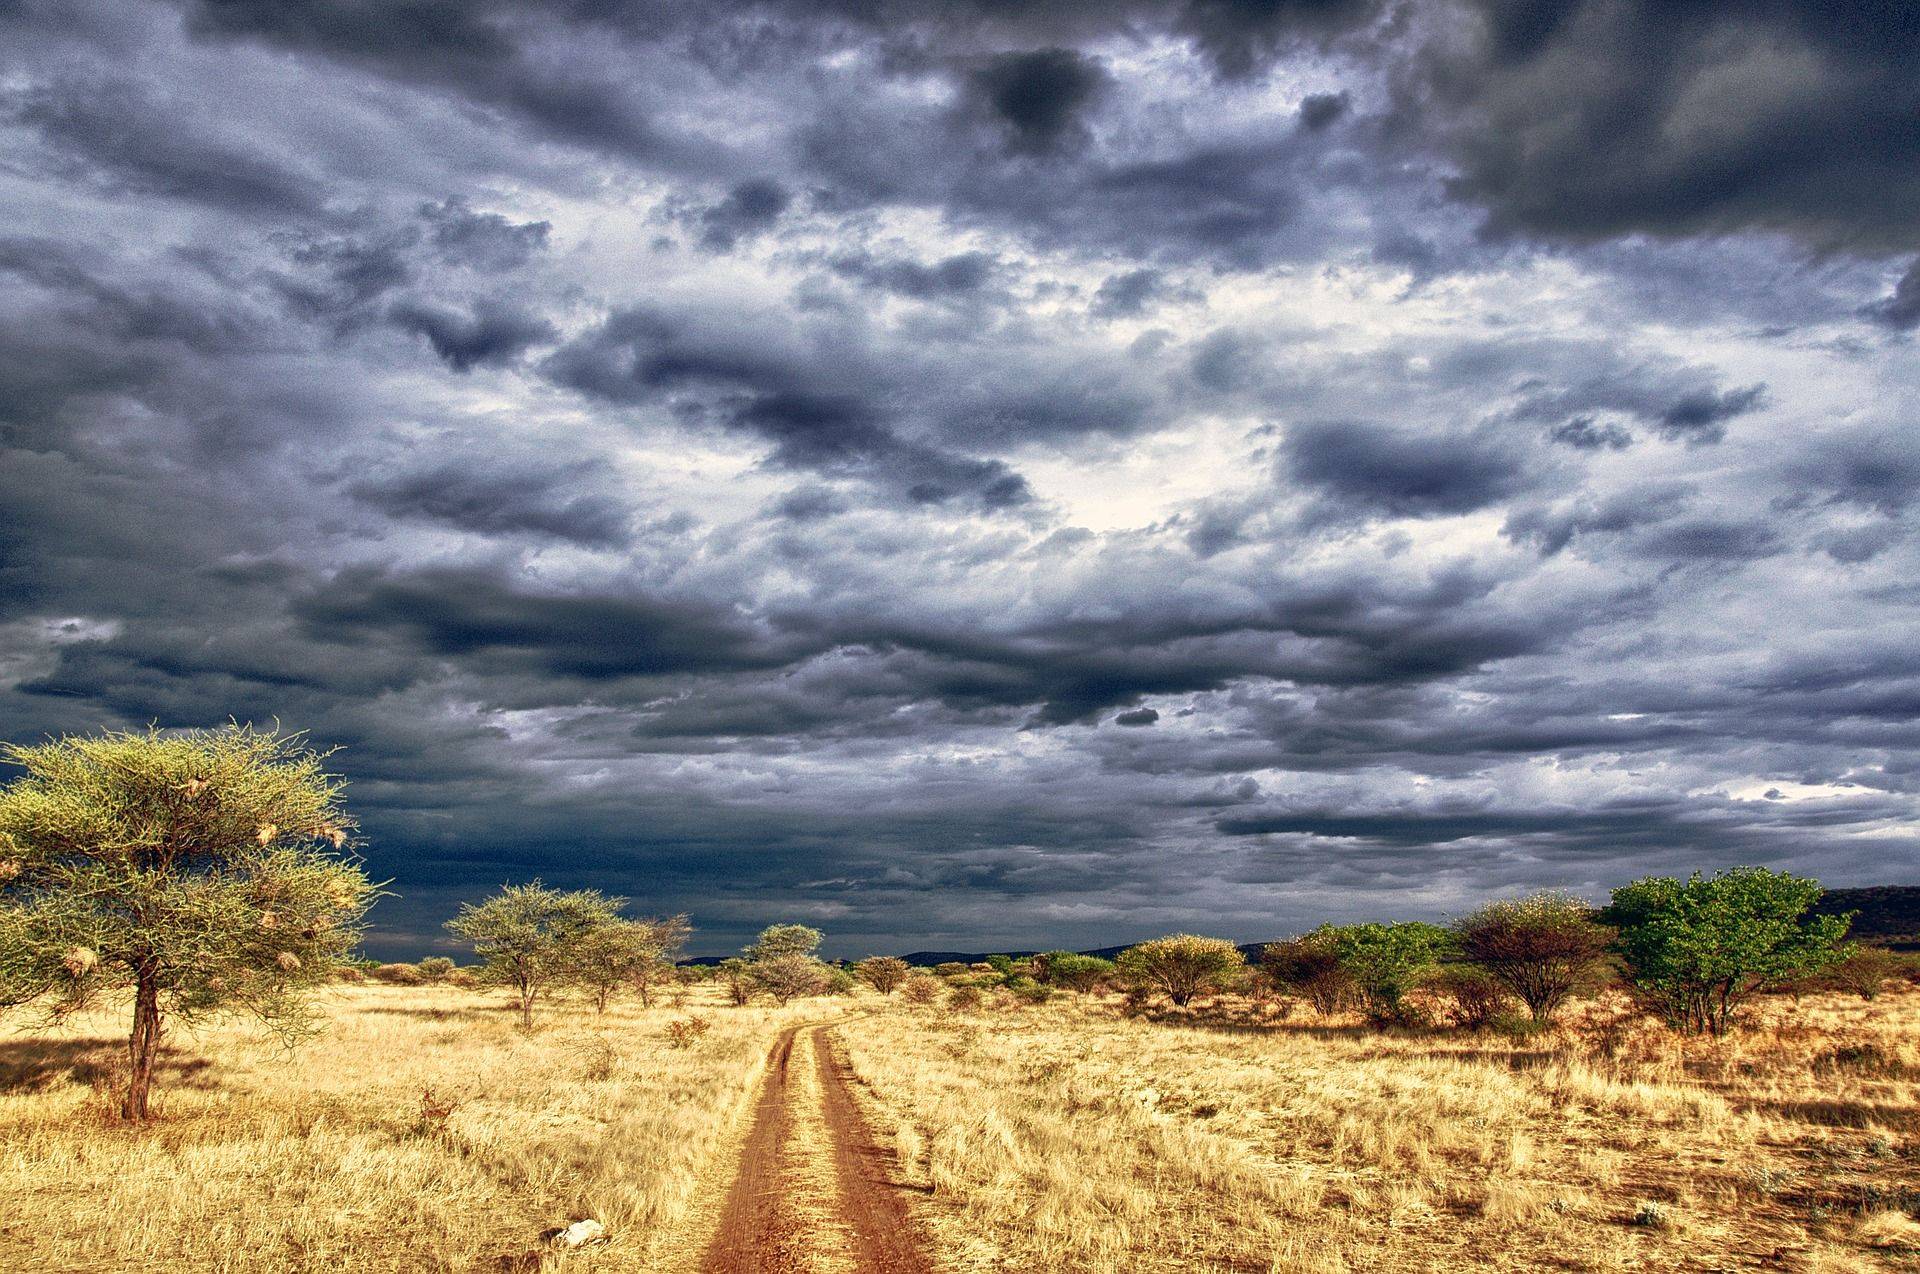 Mythique désert du Kalahari